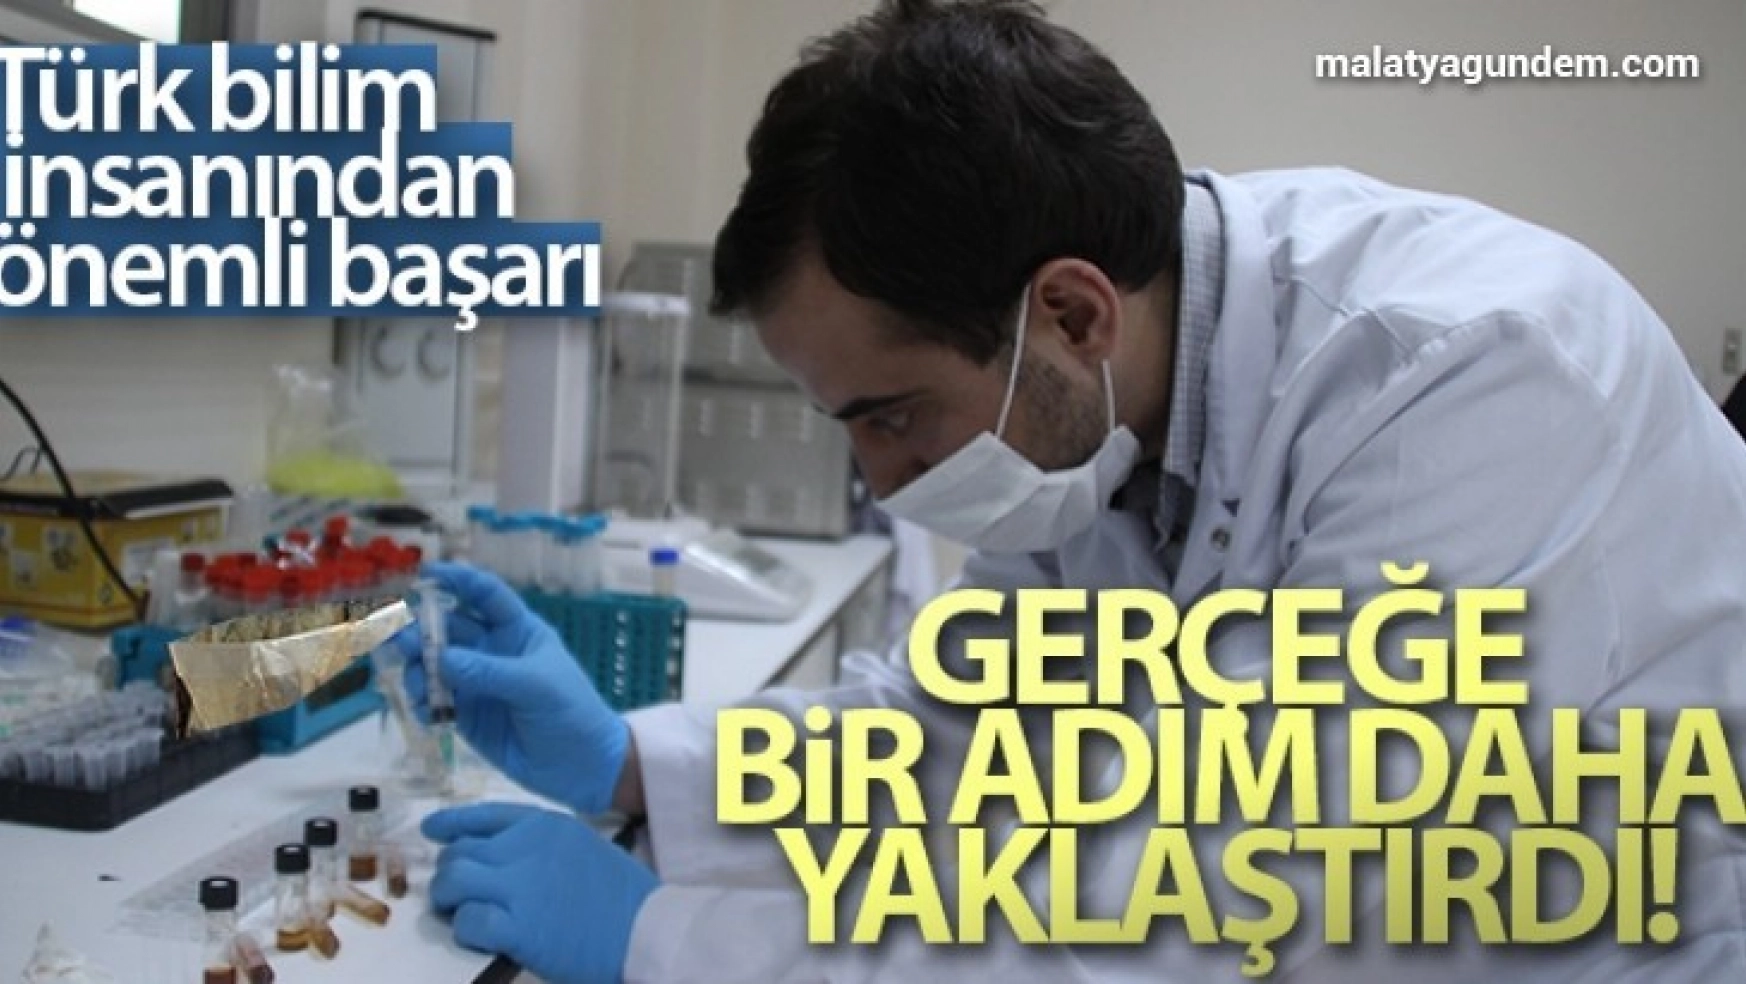 Türk bilim insanı yapay organları gerçeğe bir adım daha yaklaştırdı